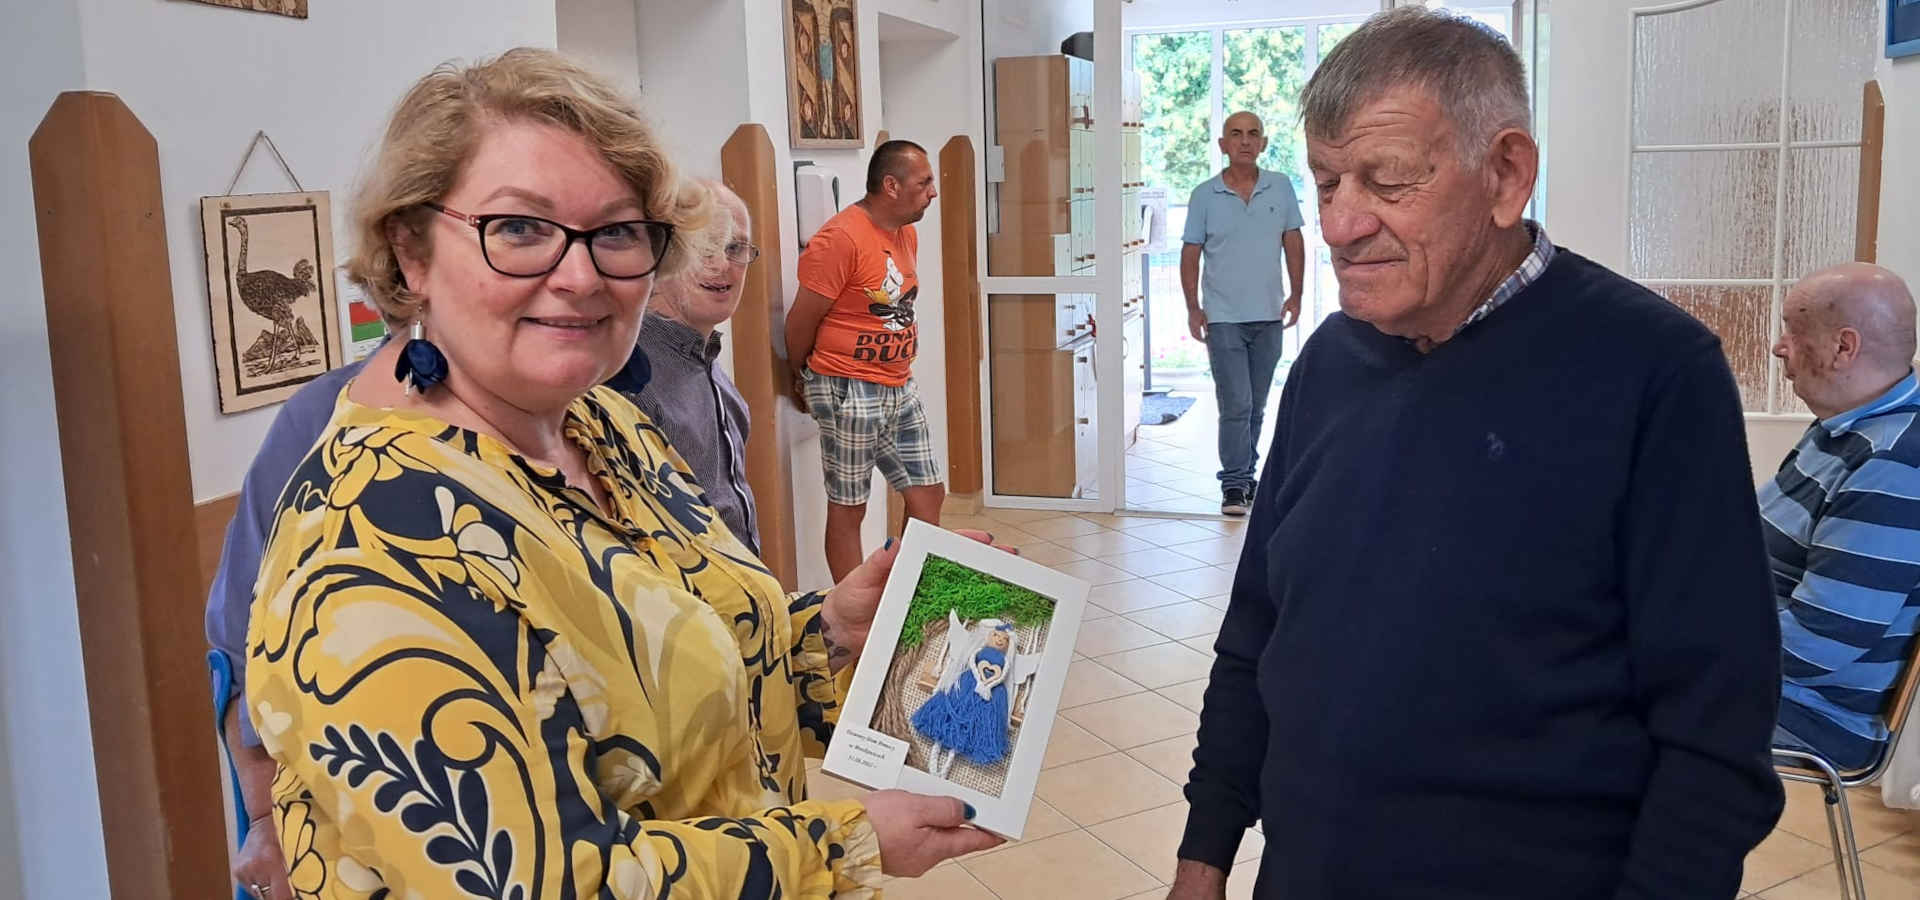 Pani Dyrektor Środowiskowego Domu Samopomocy w Woliczce odbiera prezent